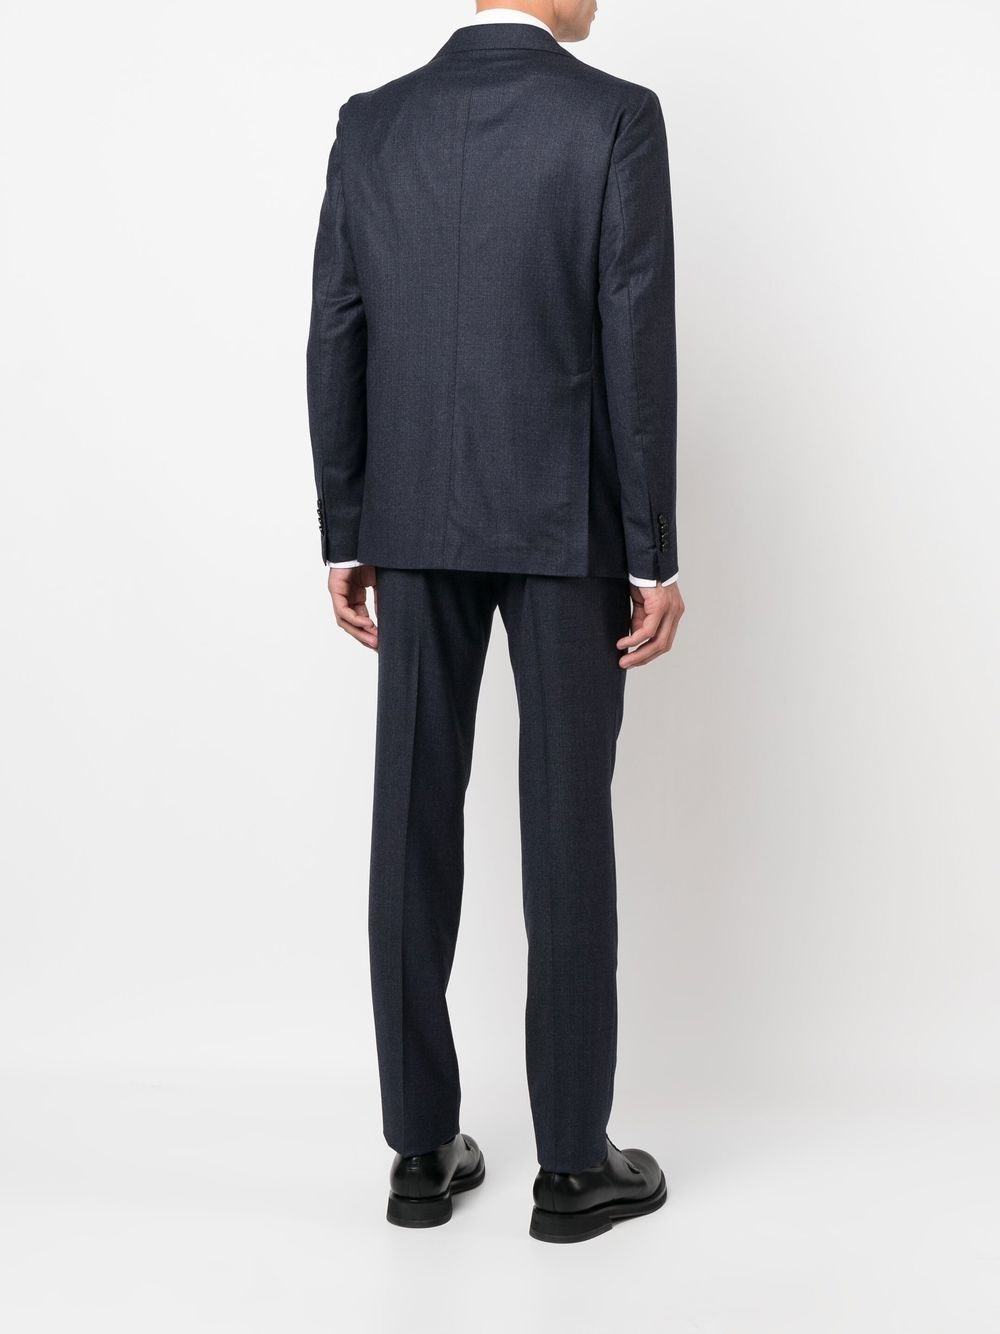 Waistcoat SpinnakerBoutique Uomo Abbigliamento Abiti eleganti Suit 